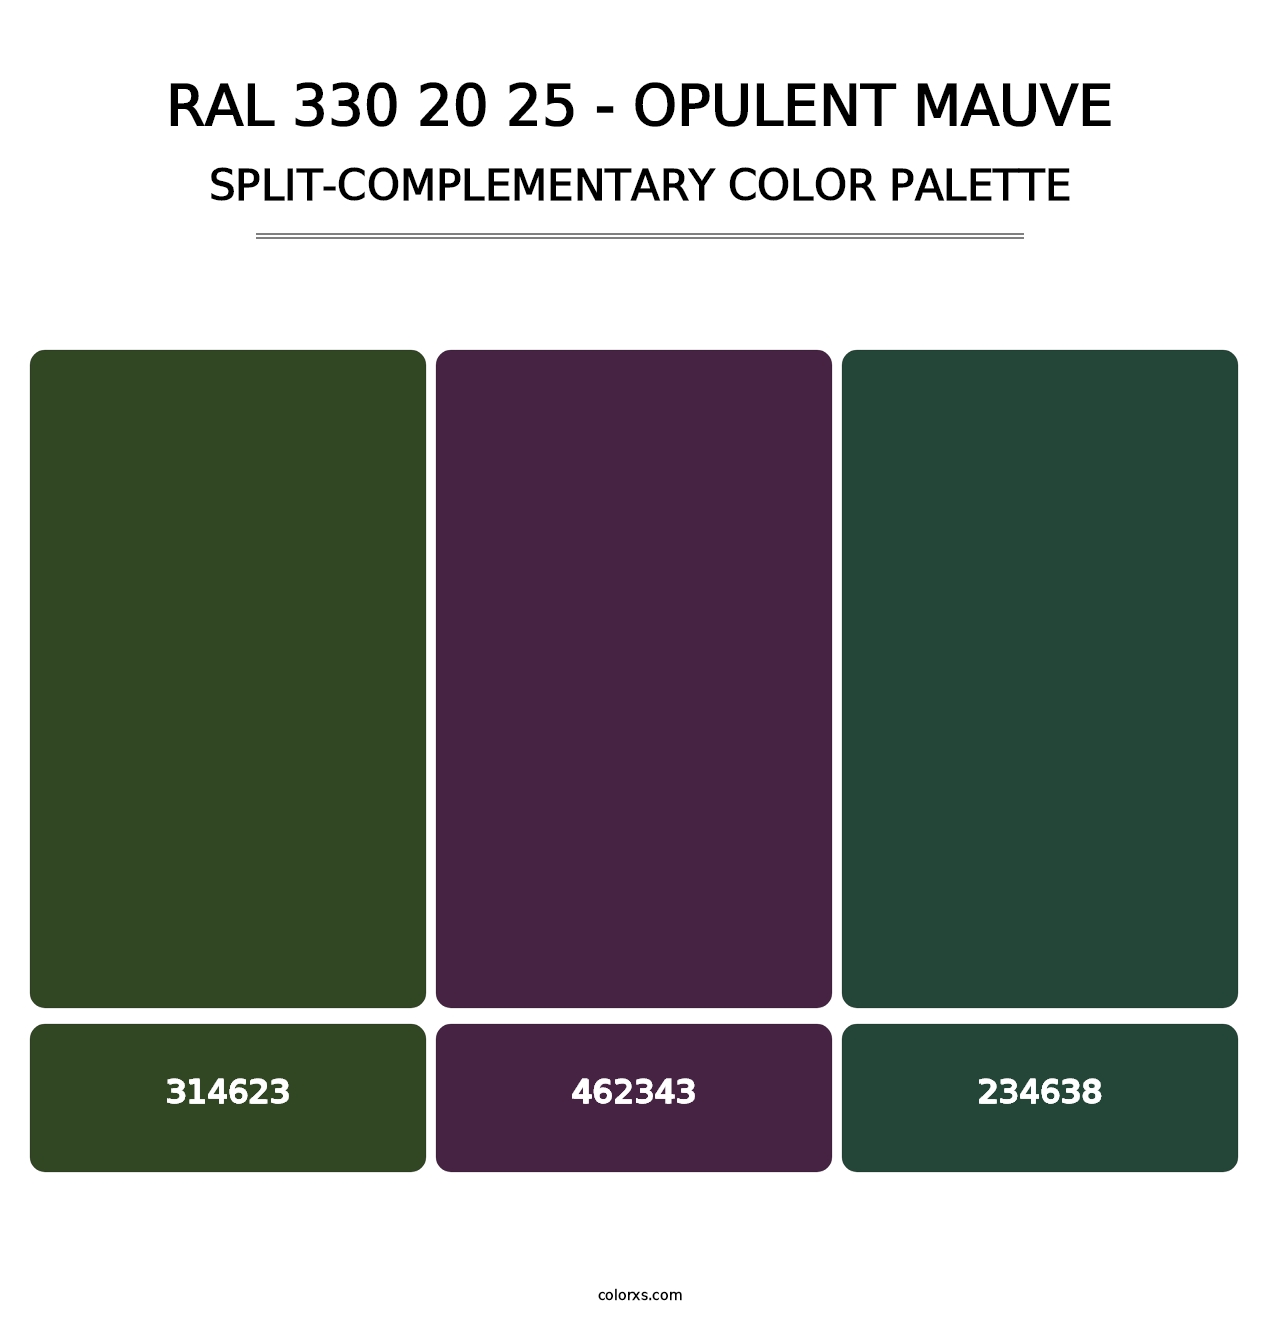 RAL 330 20 25 - Opulent Mauve - Split-Complementary Color Palette